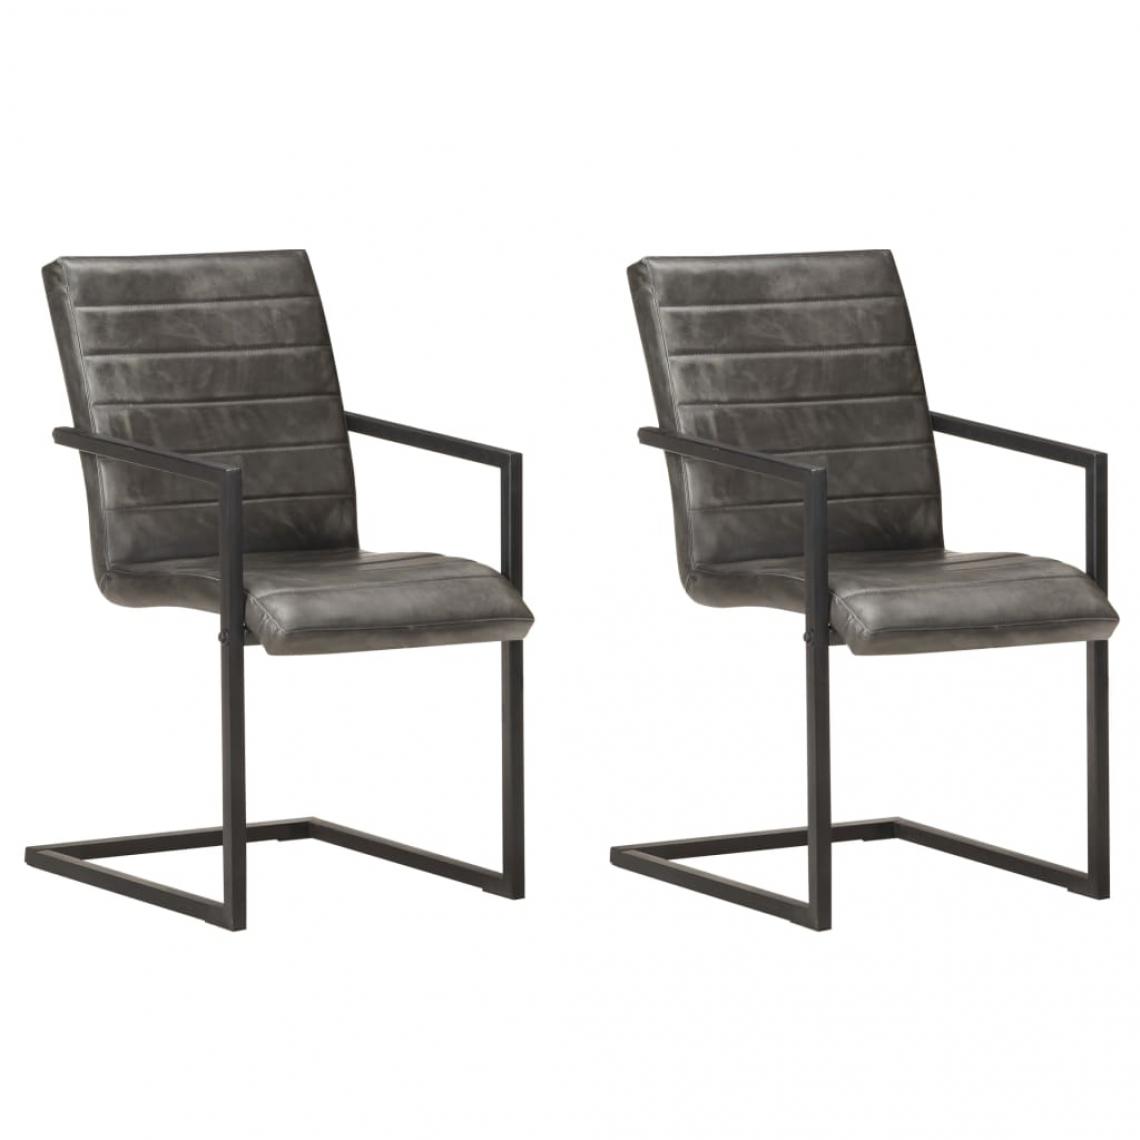 Decoshop26 - Lot de 2 chaises de salle à manger cuisine cantilever design rétro cuir véritable gris CDS020323 - Chaises